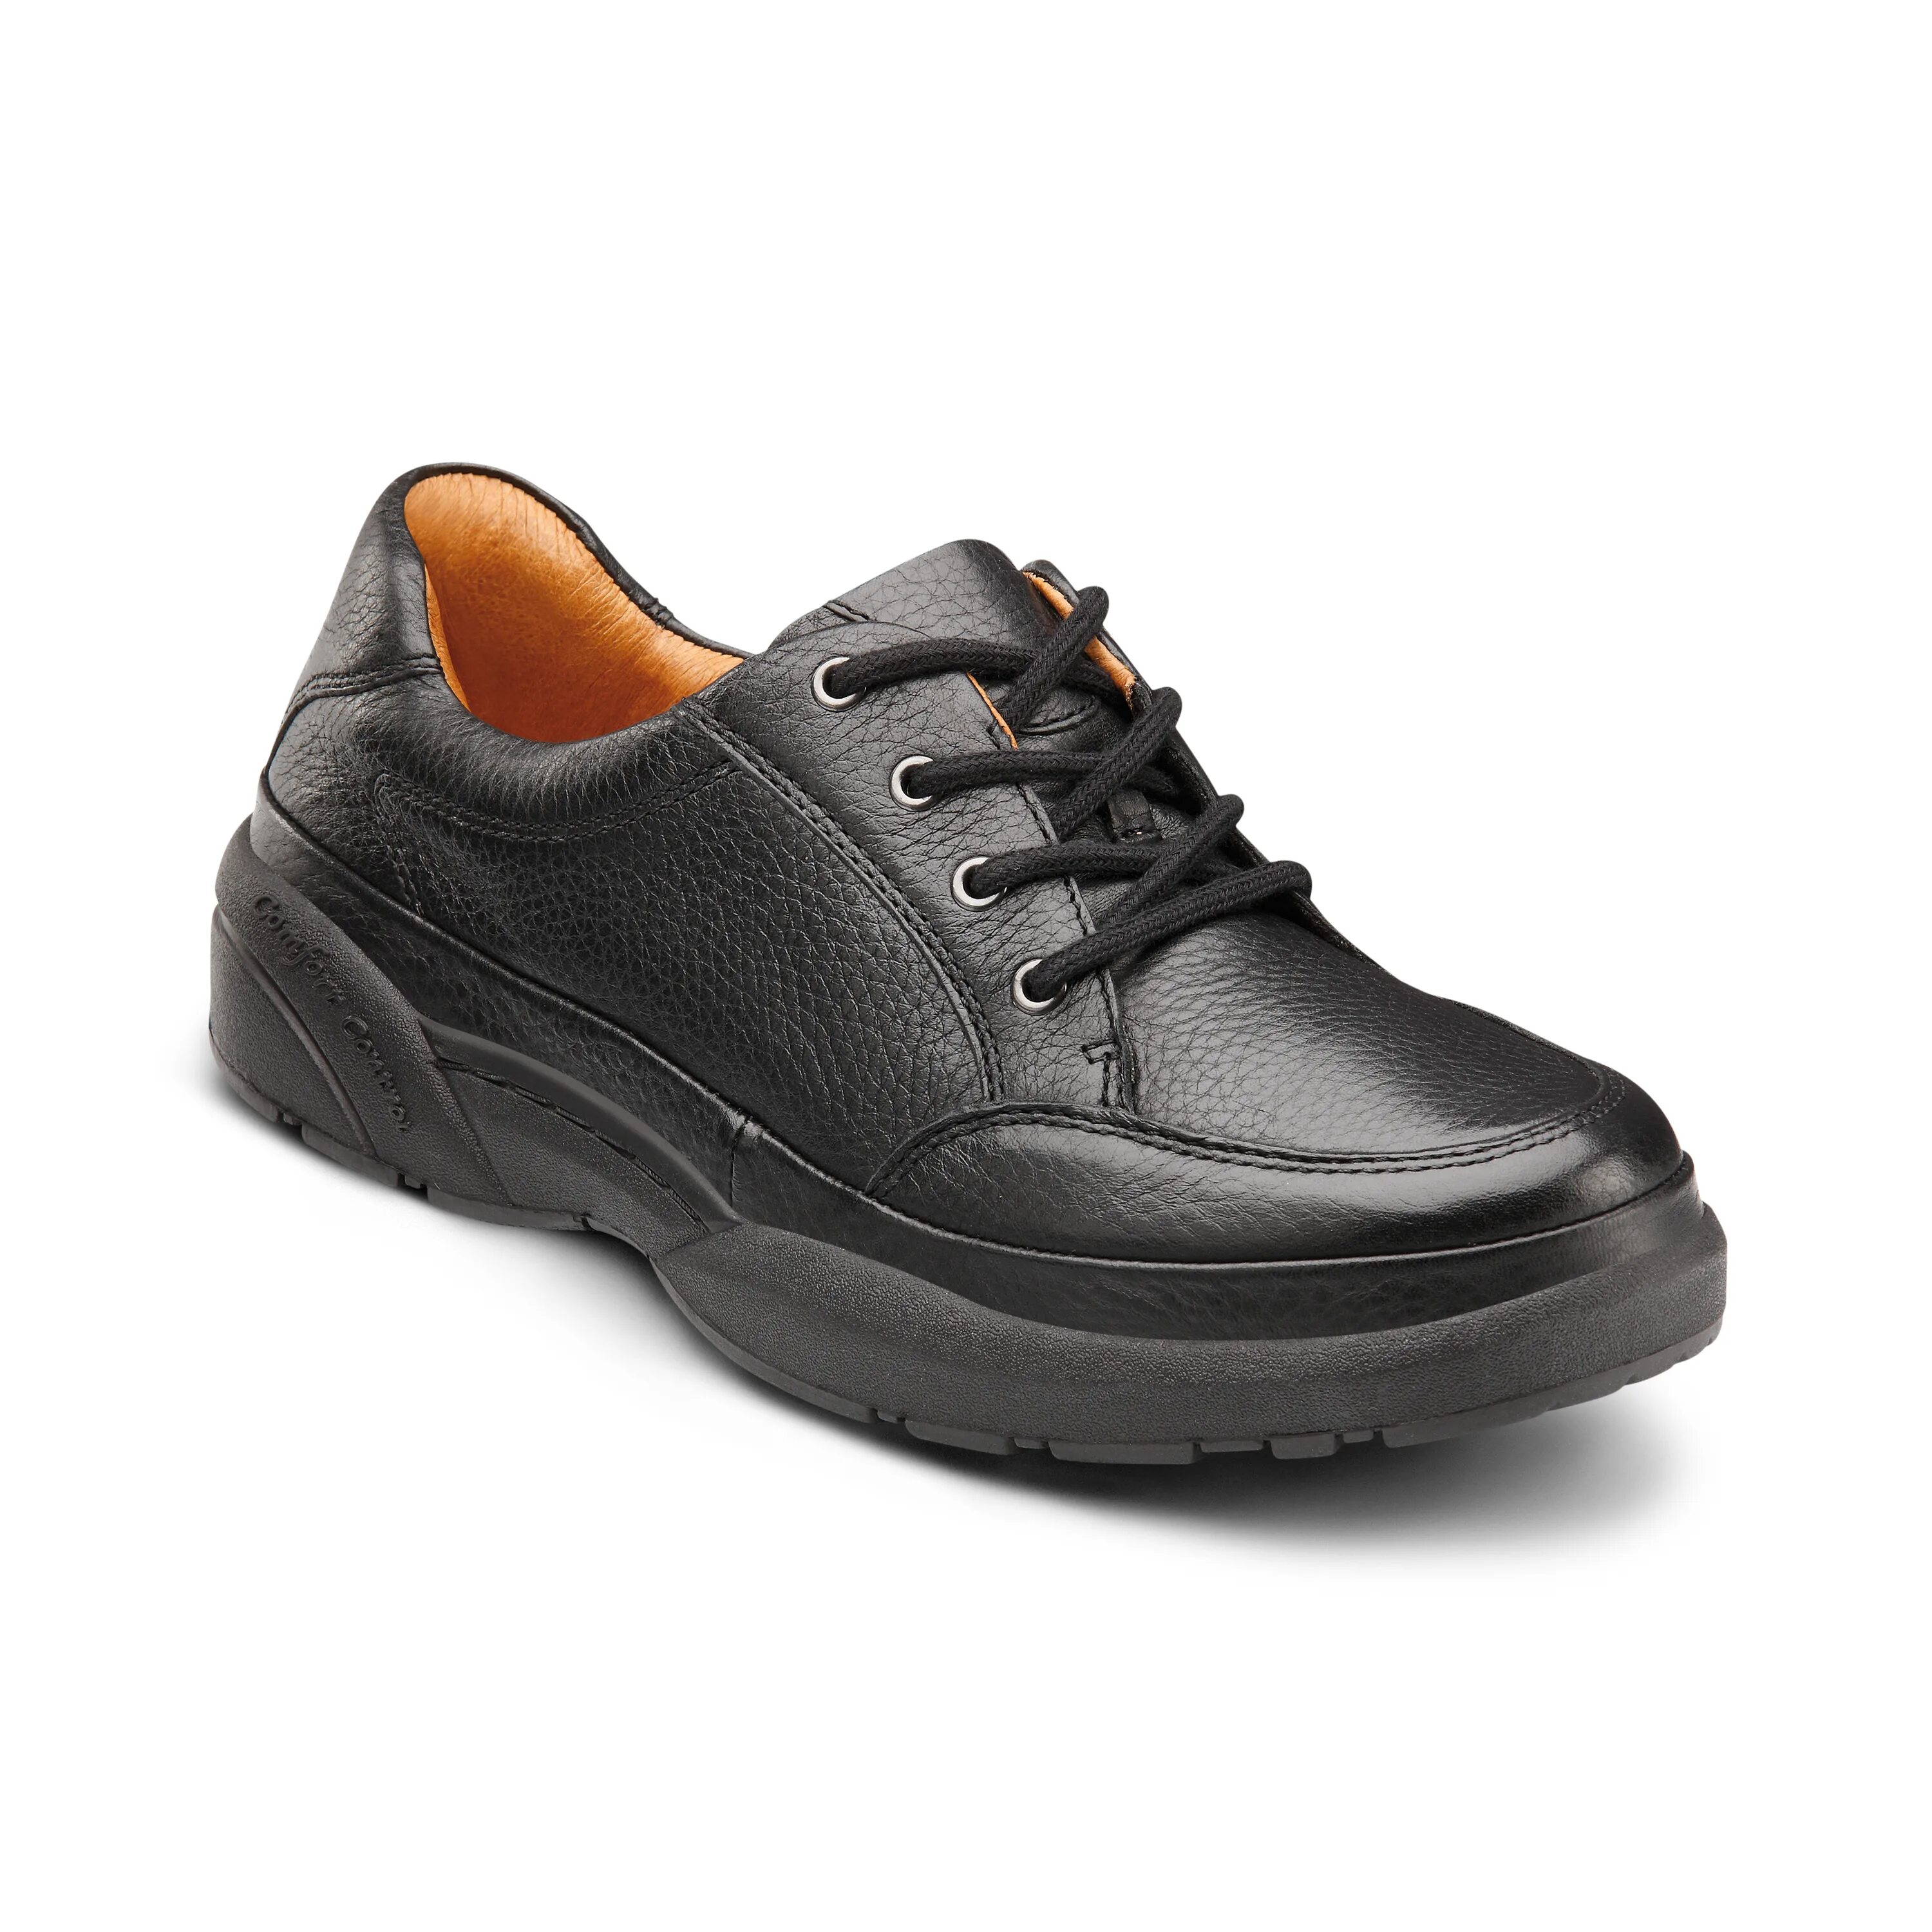 Обувь комфорт купить. Мужская обувь комфорт. Dr Comfort. Ботинки Comfort sole. Обувь w22.